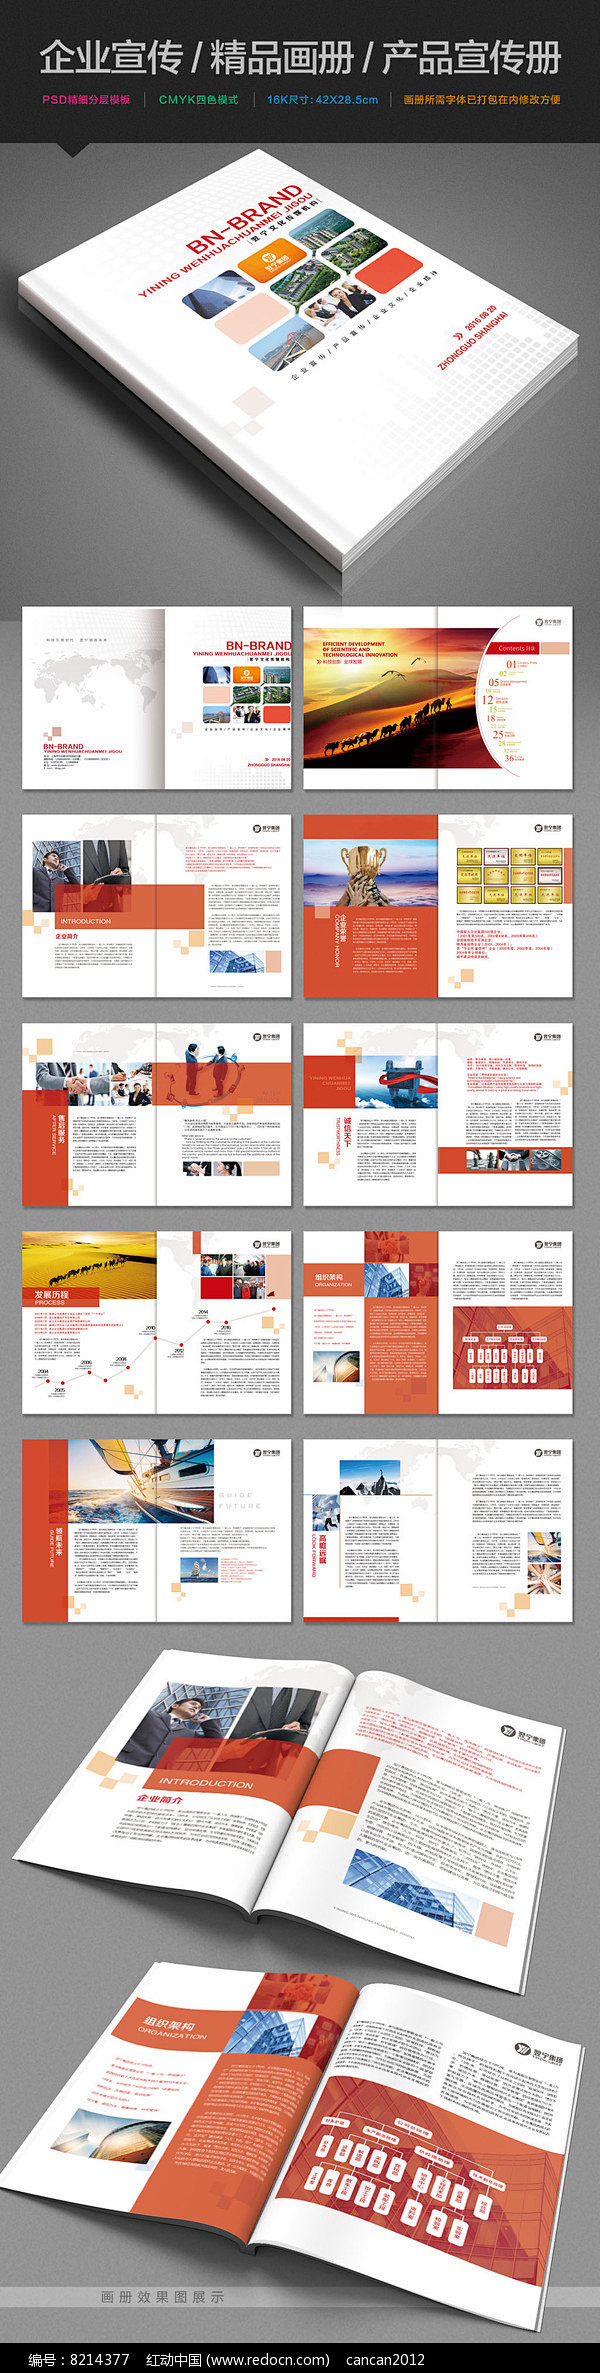 红色通用企业宣传画册设计PSD模板图片 ...